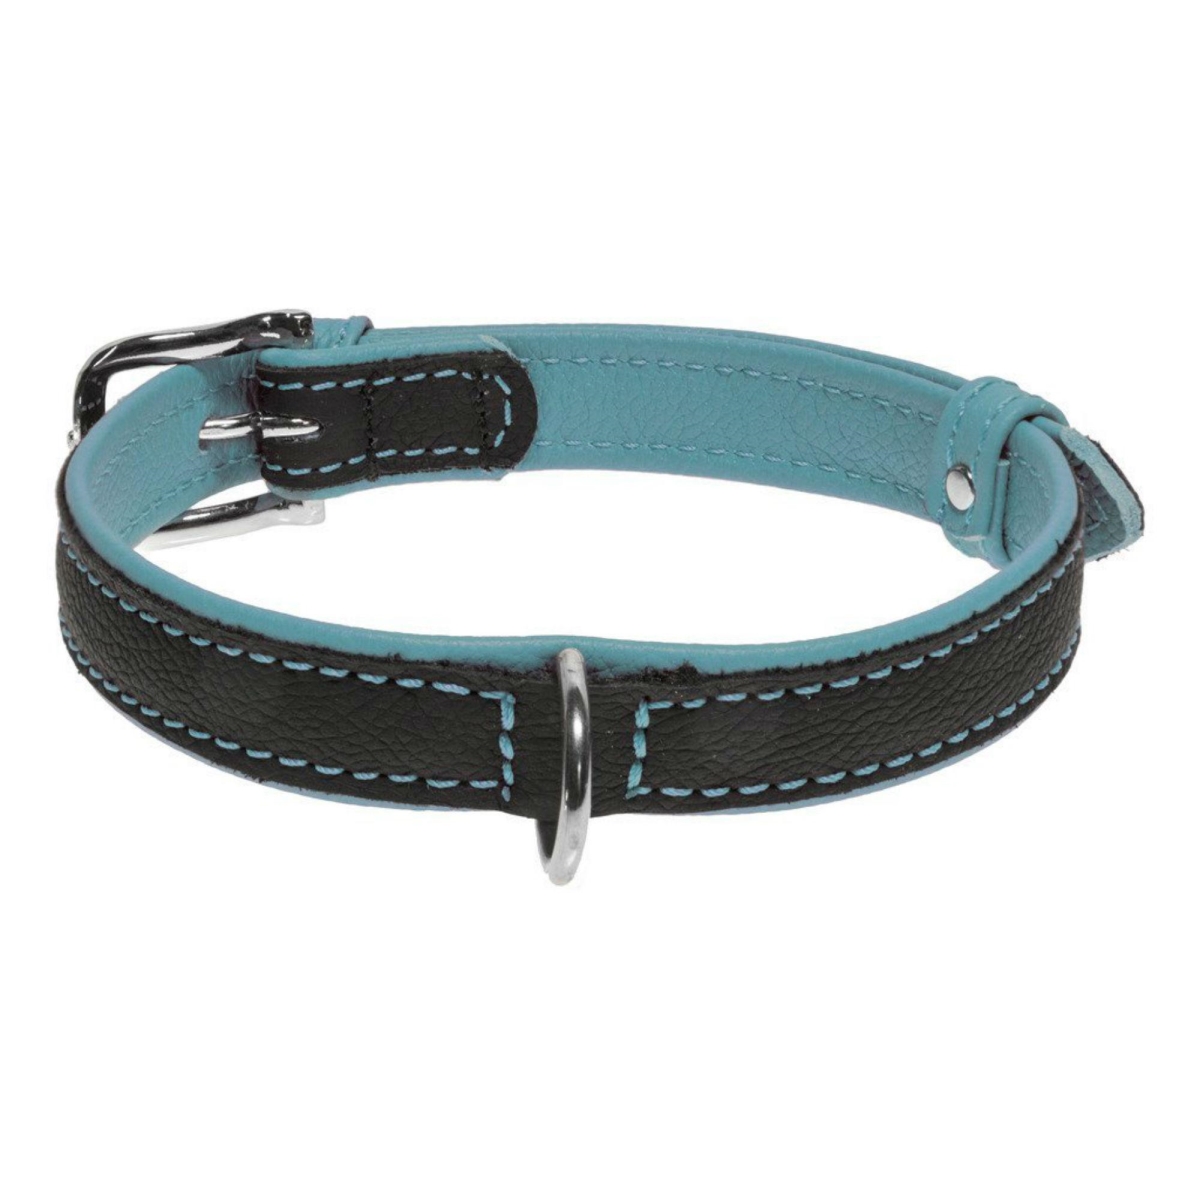 Dog Line L1012-teal-md Soft Leather Dual Color Dog Collar, Teal - Medium